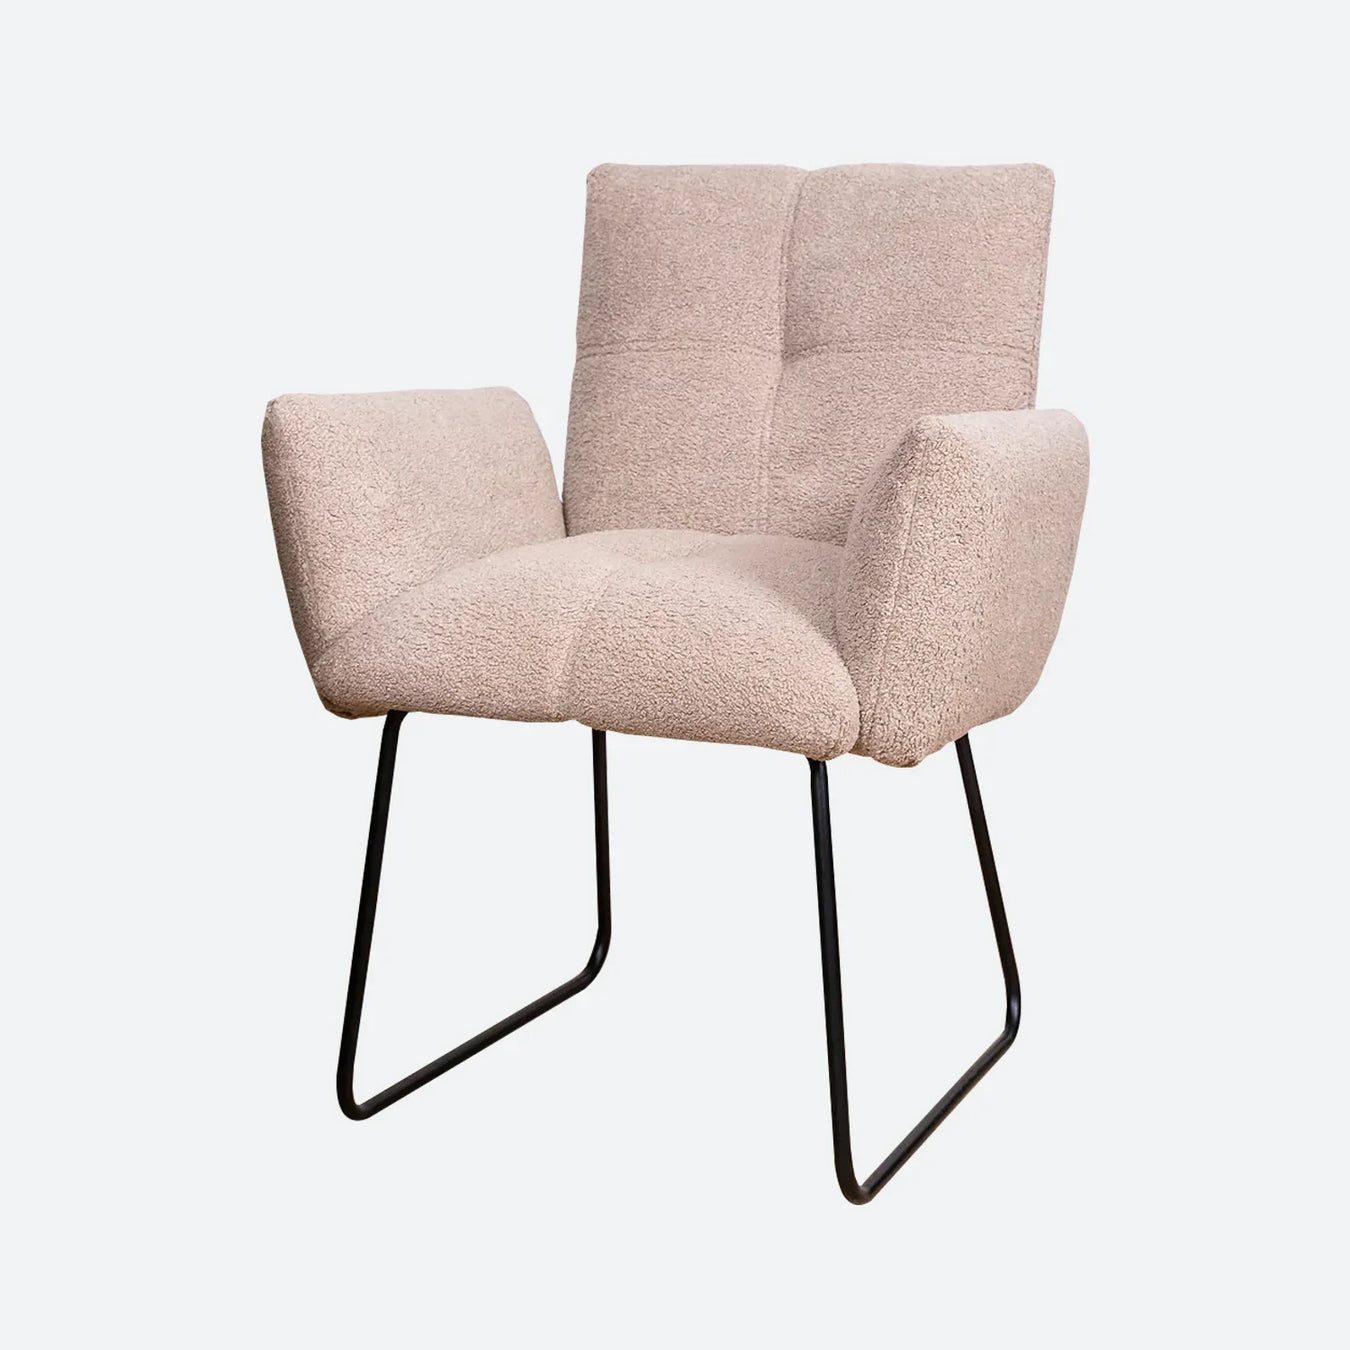 eetkamerstoelen met armleuning vind je bij meubelbaas. Wij hebben honderden soorten stoelen met armleuning. In verschillende kleuren stoffen en maten. Bestel jou eetkamerstoel met armleuning snel en gemakkelijk online bij meubelbaas.